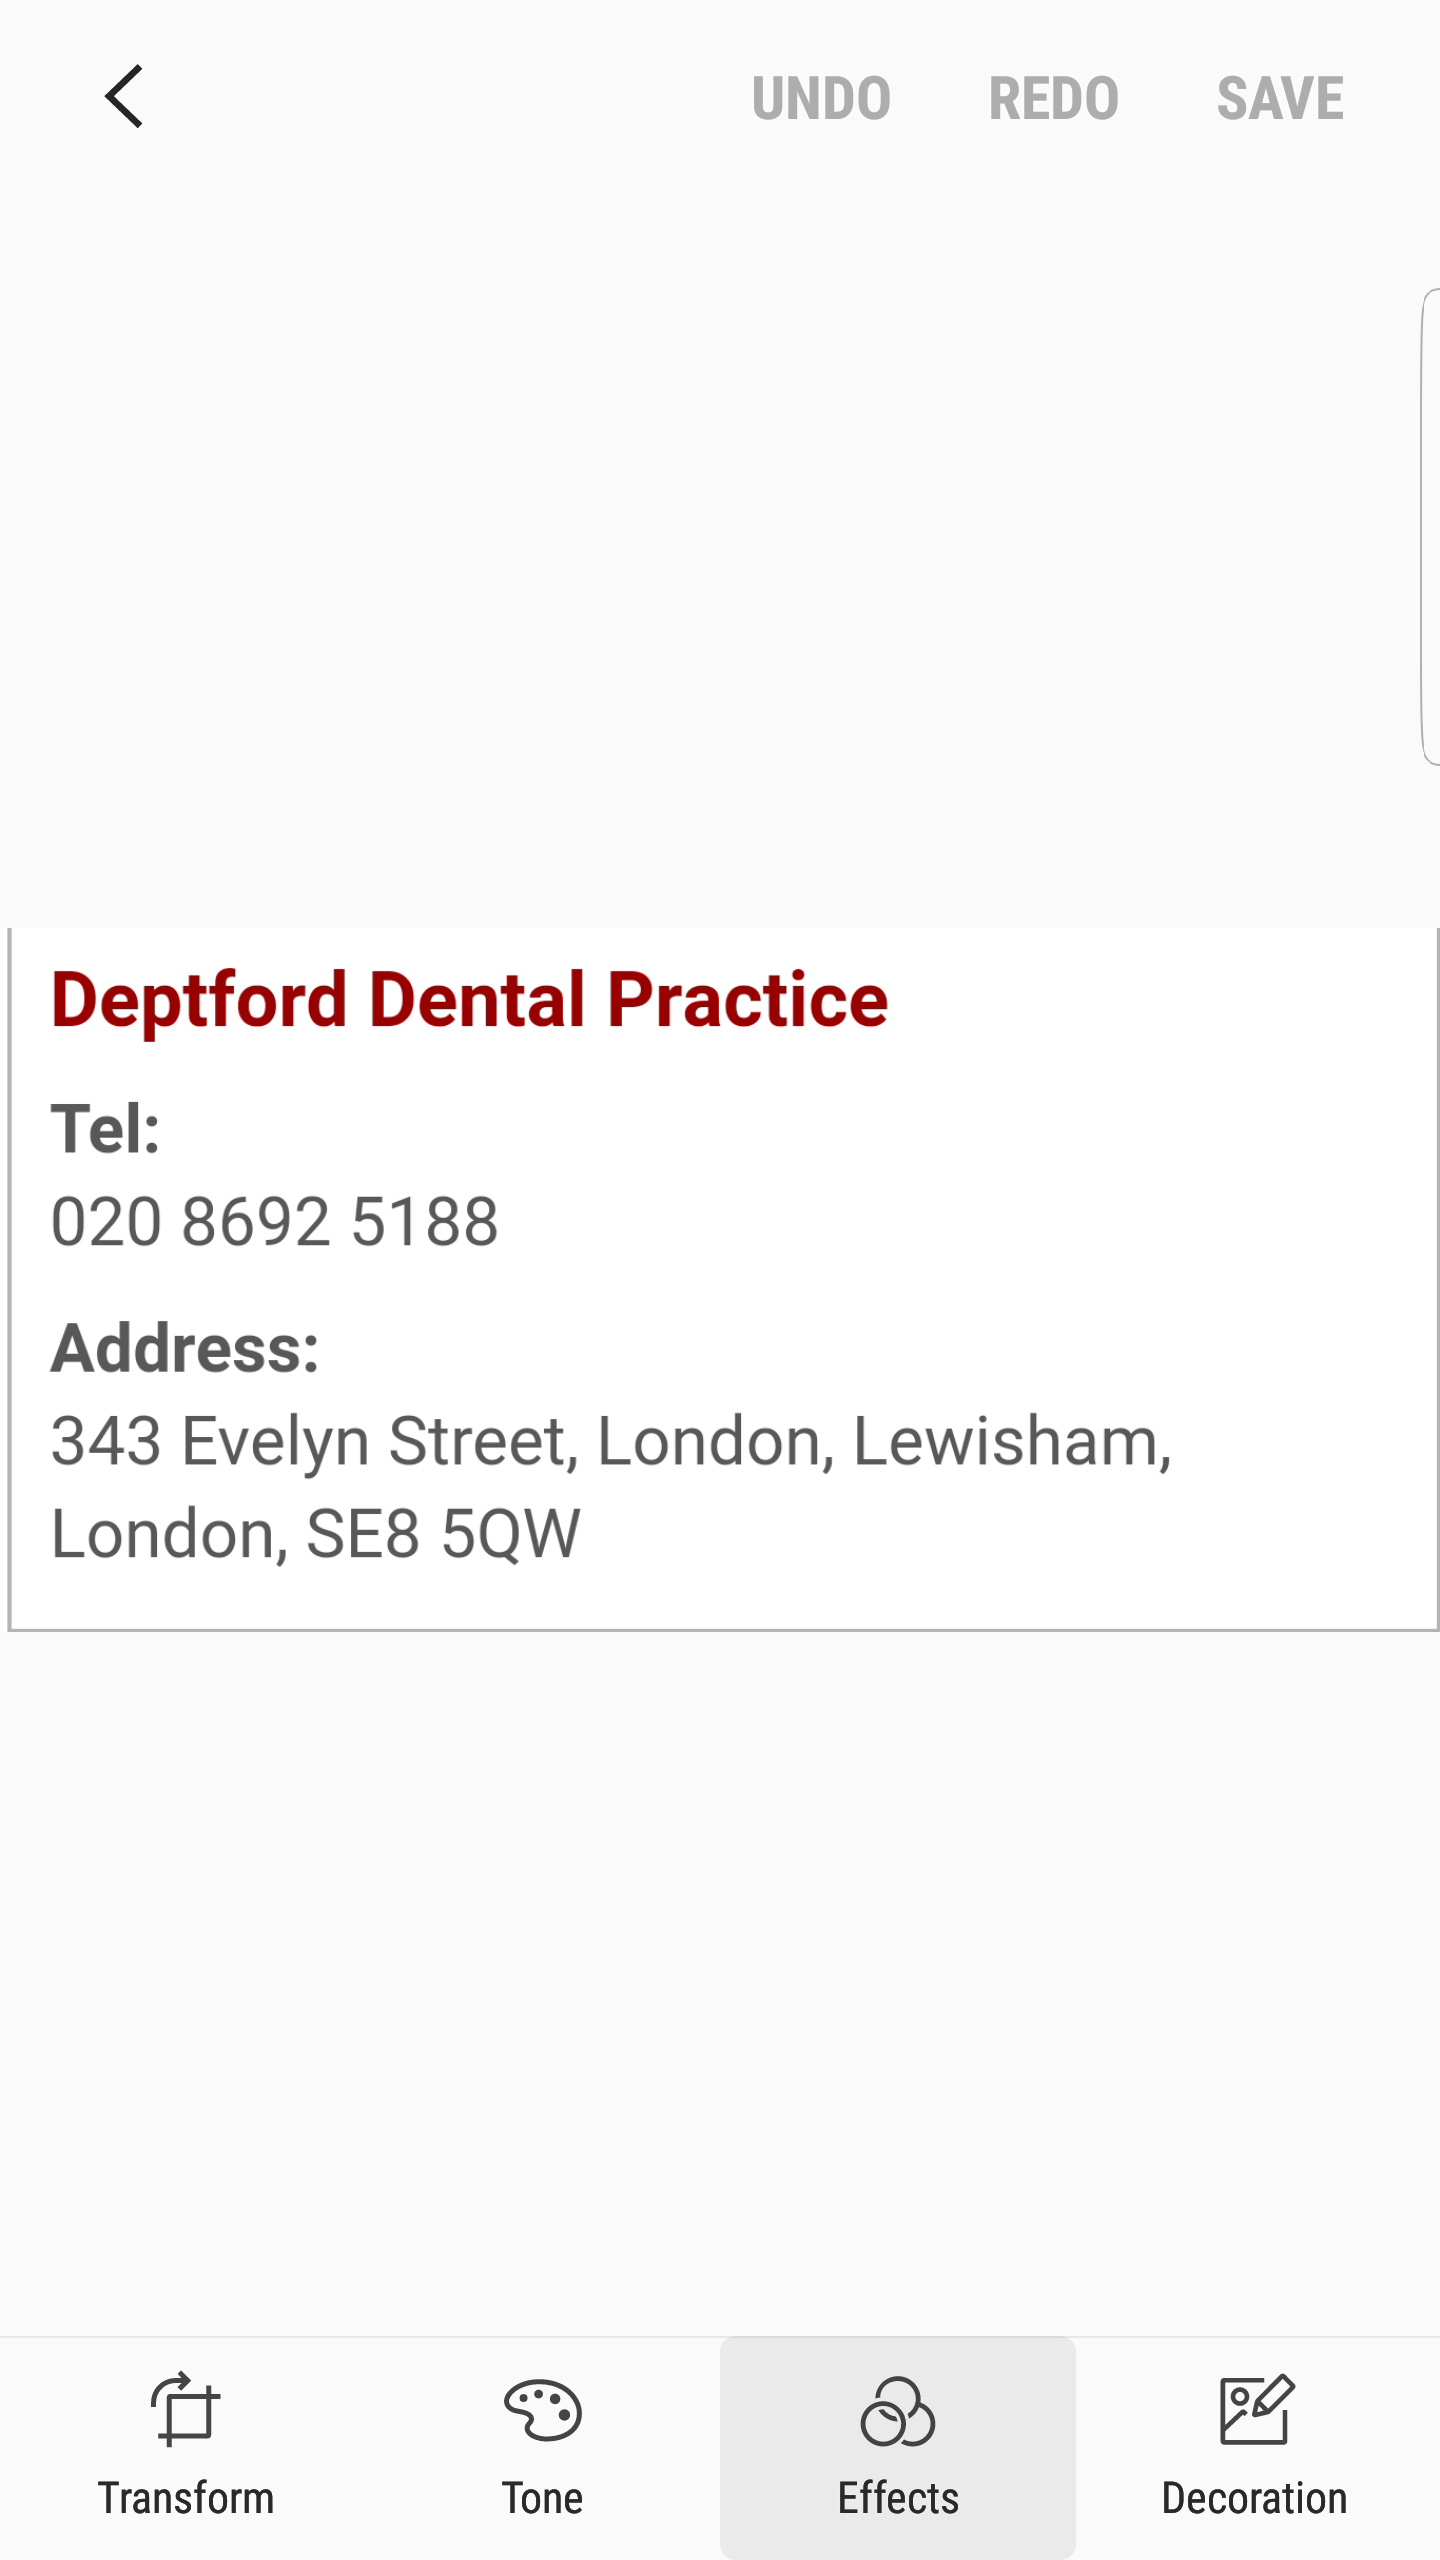 Deptford Dental Practice